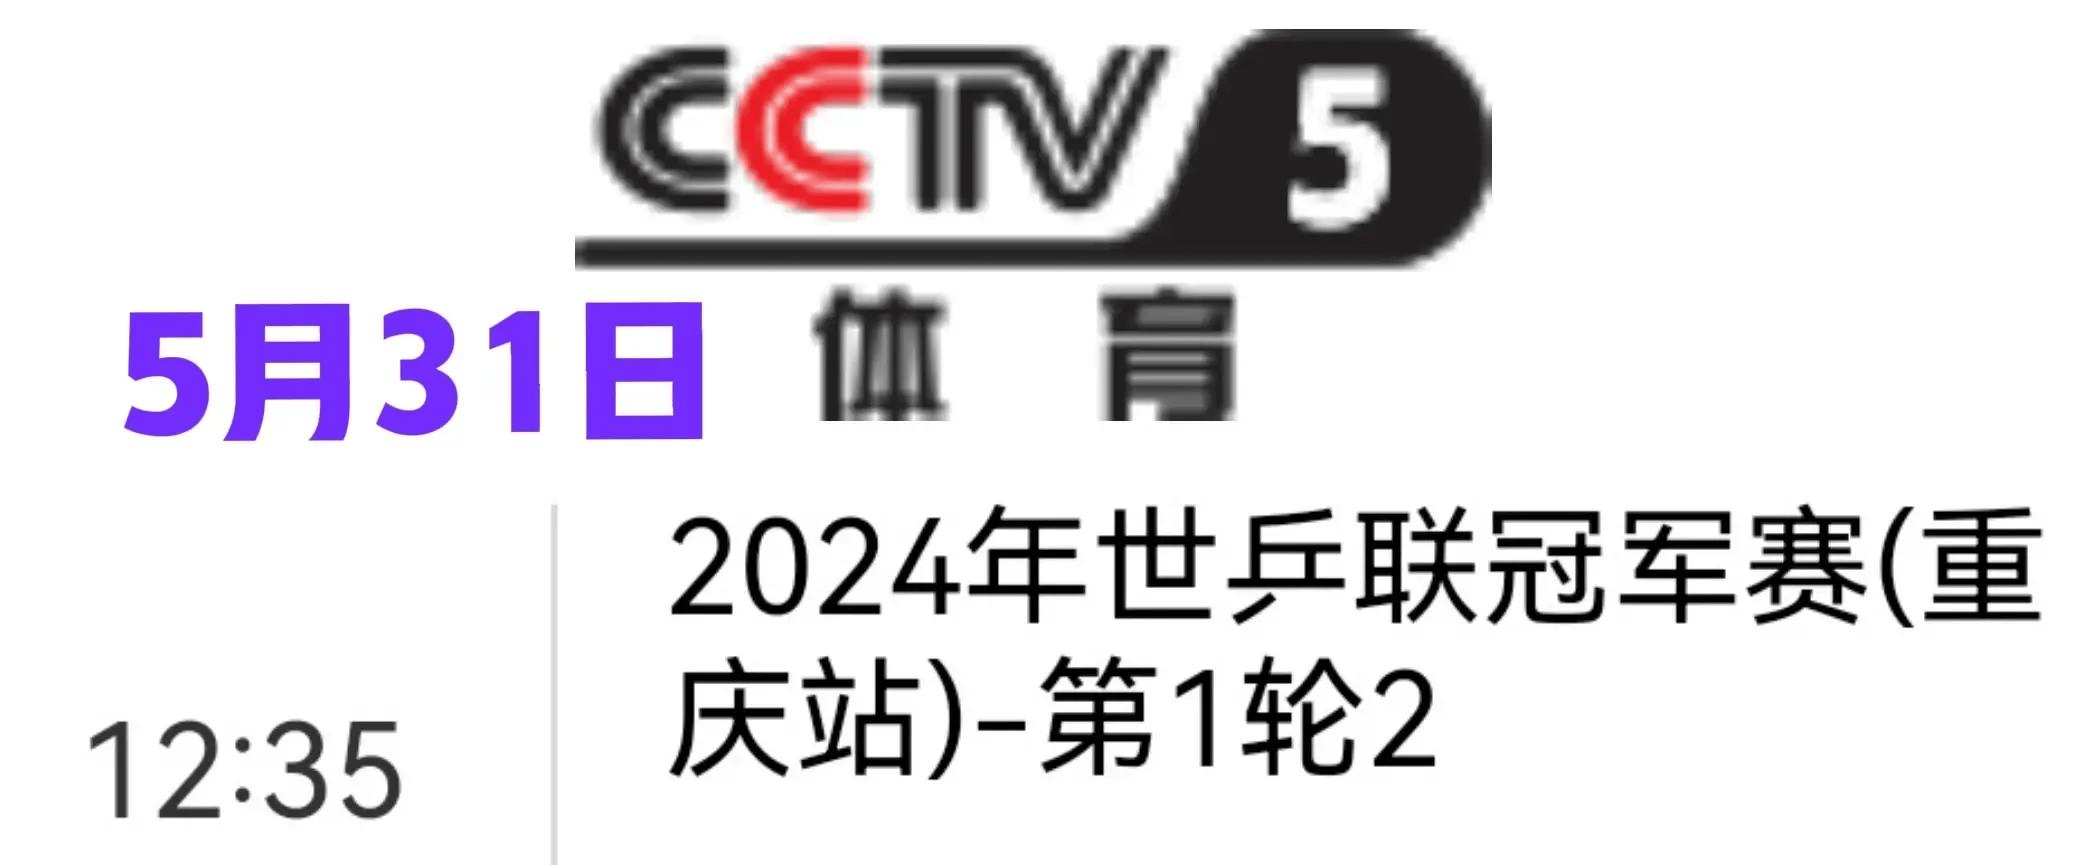 5月31日cctv5直播乒乓球重庆冠军赛赛程 央视直播预告 汇总点评